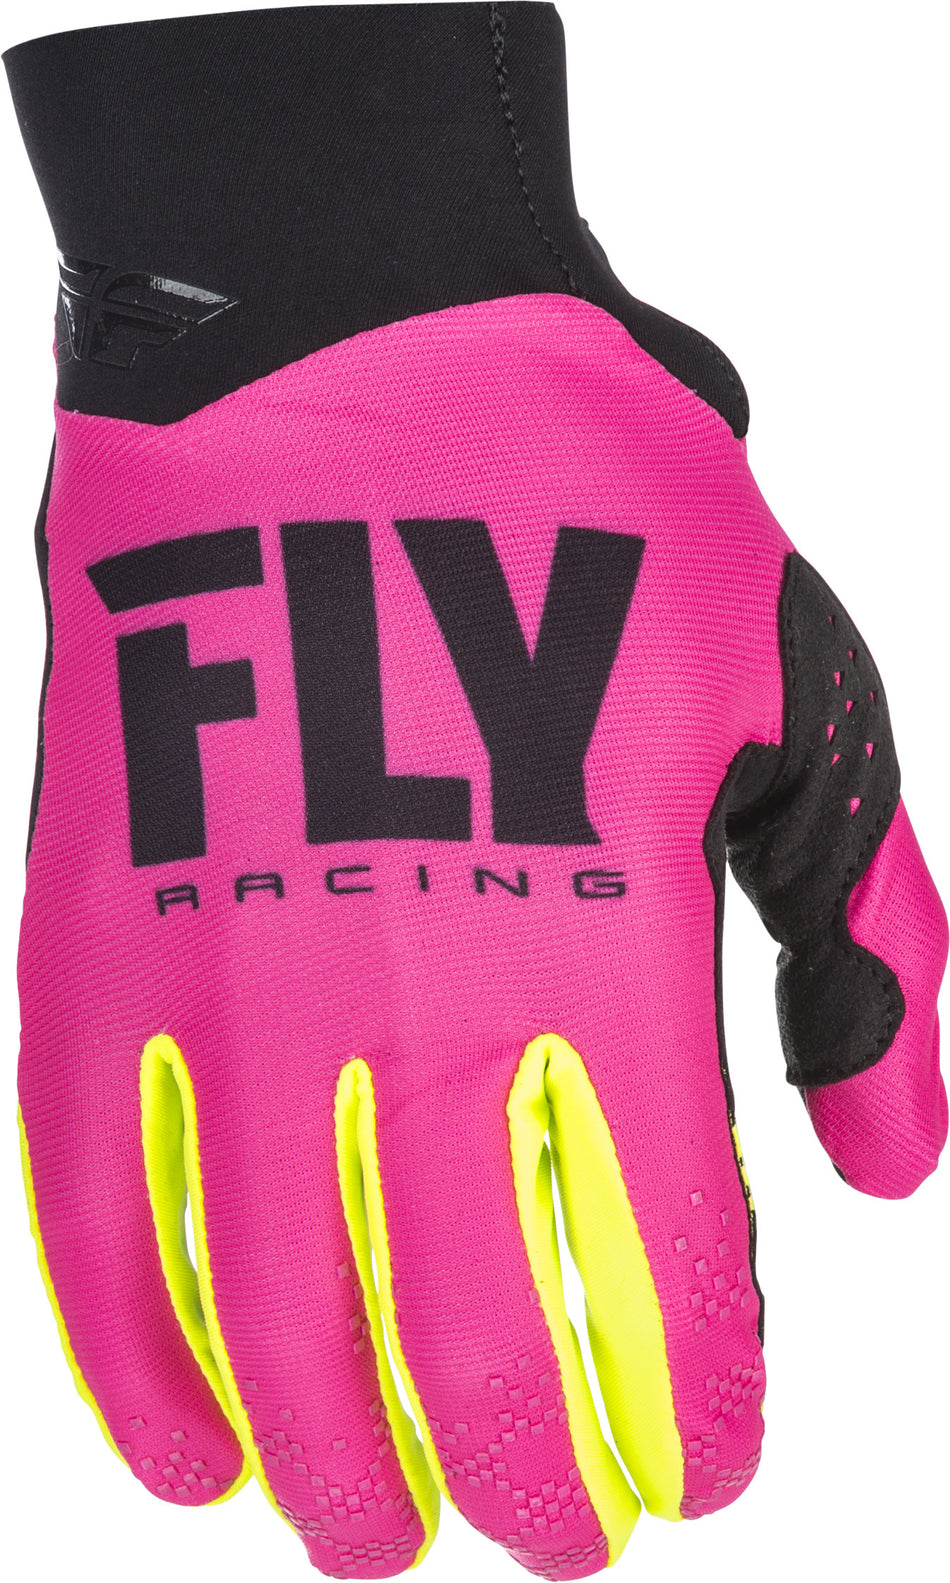 FLY RACING Pro Lite Gloves Neon Pink/Hi-Vis Sz 13 371-81713